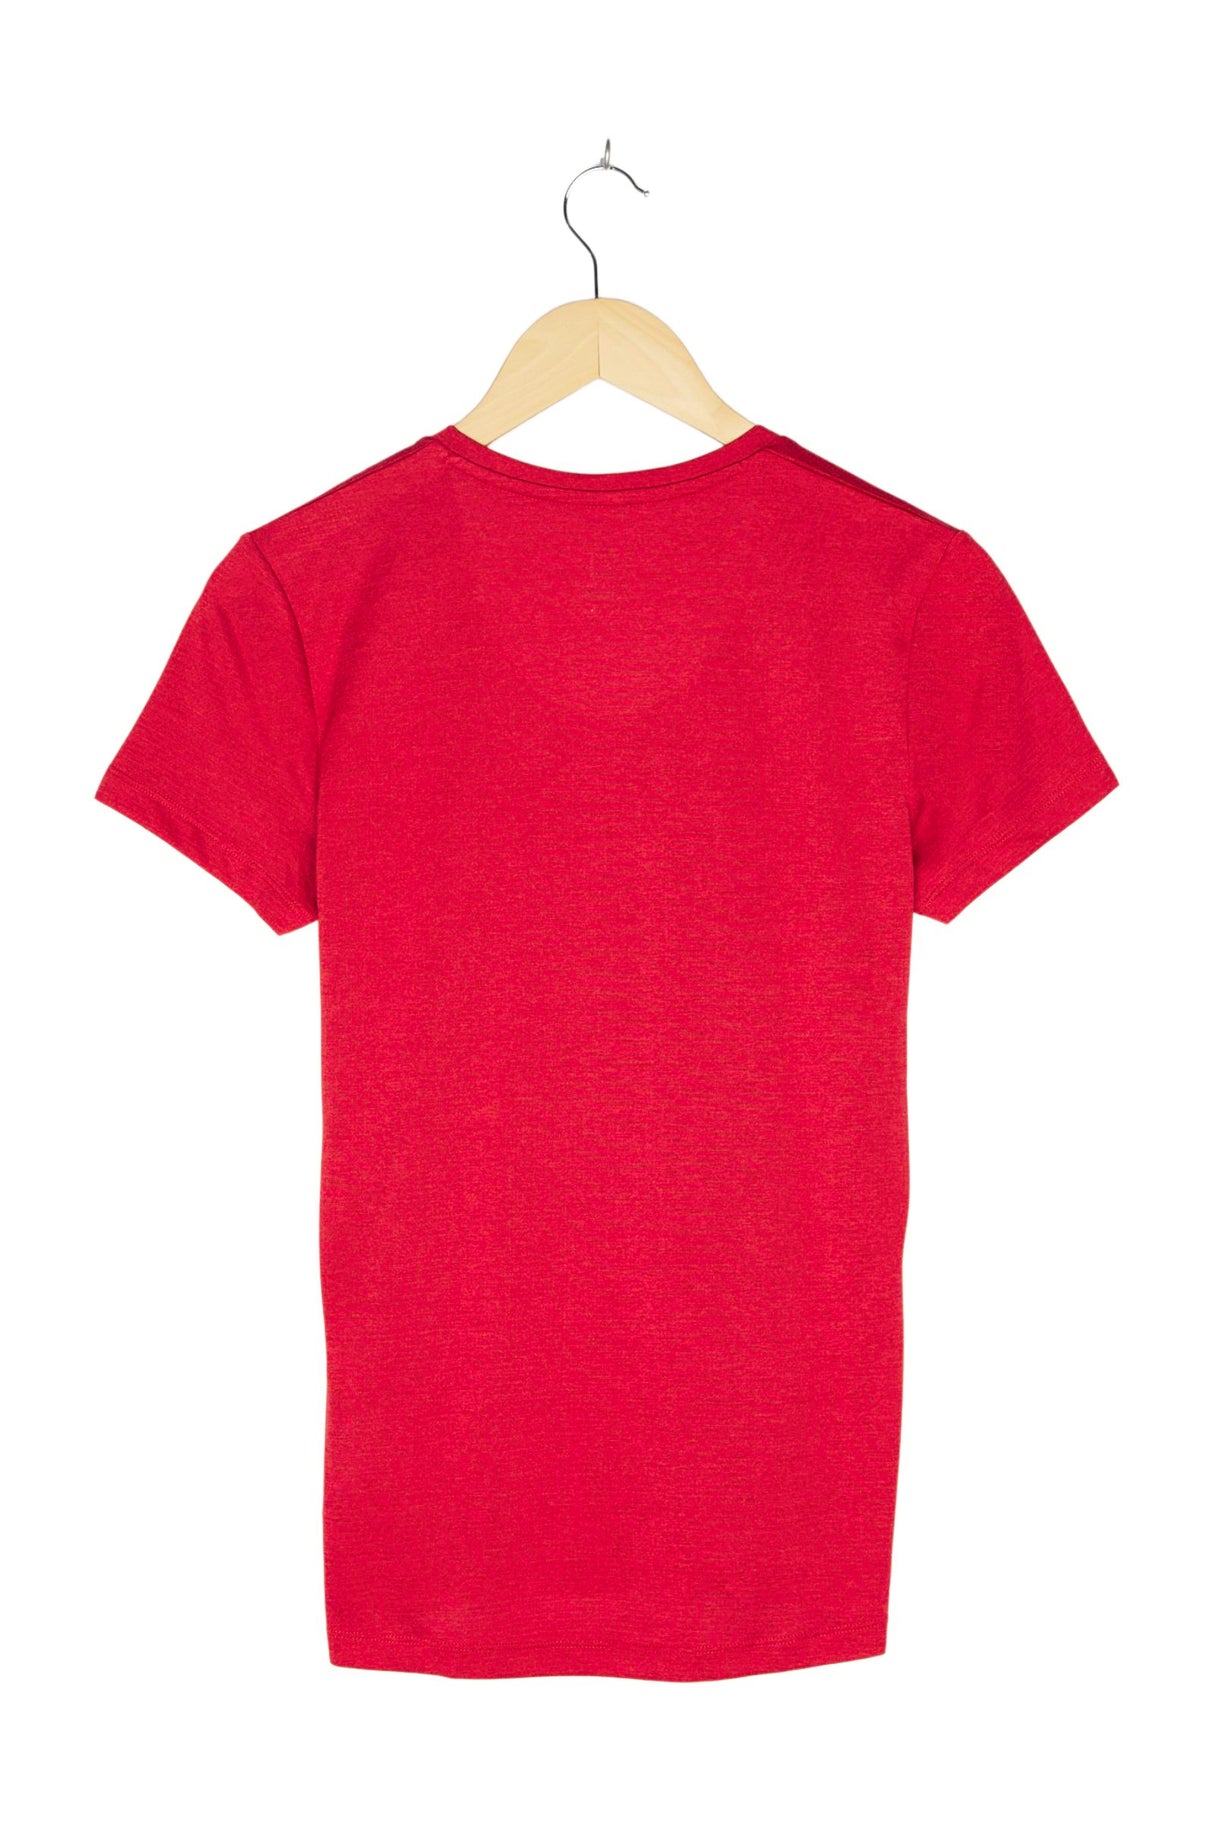 Salomon T-Shirt Funktion für Damen